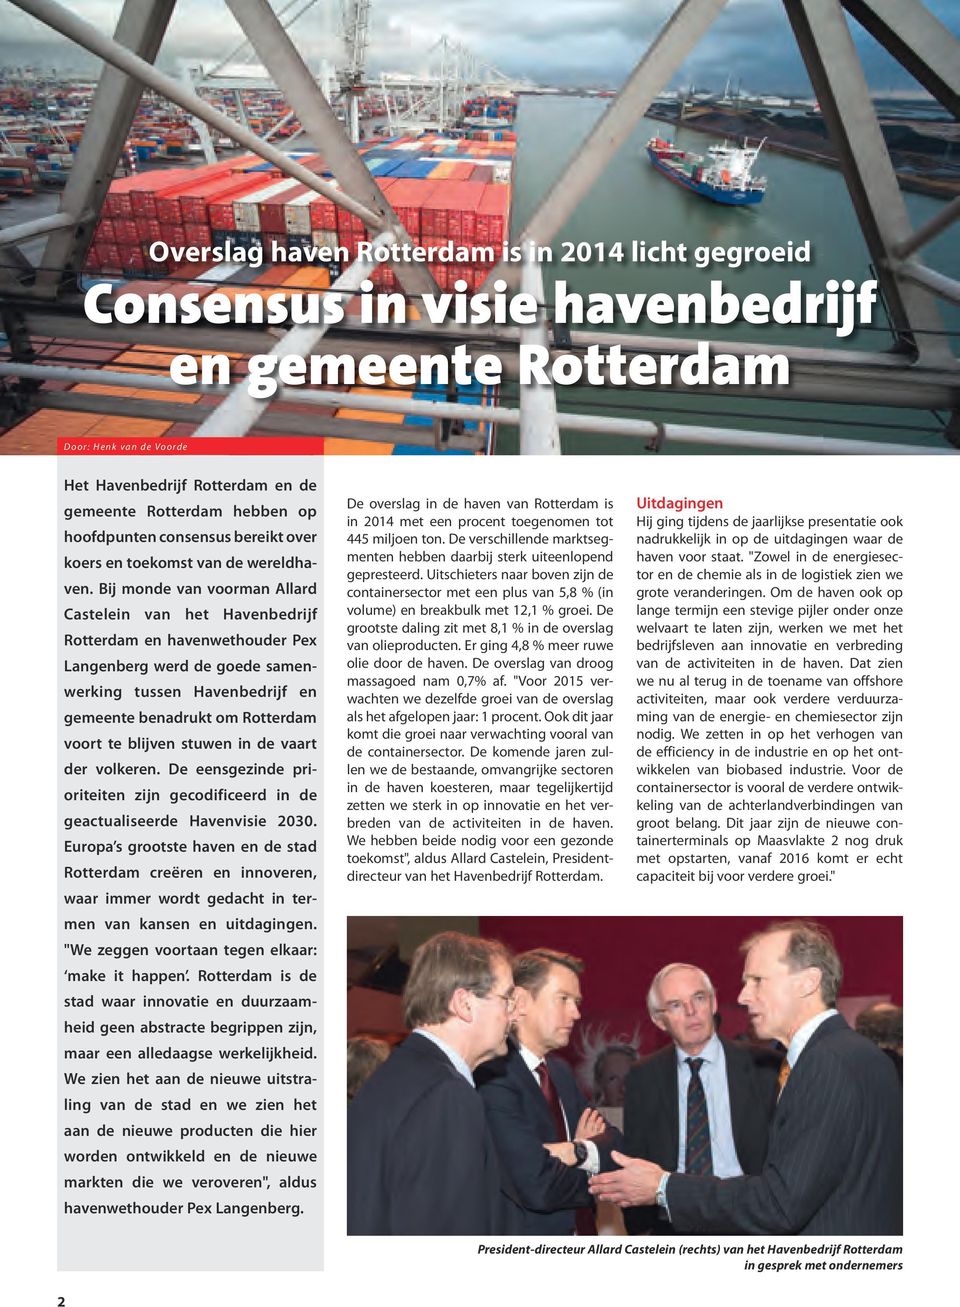 Bij monde van voorman Allard Castelein van het Havenbedrijf Rotterdam en havenwethouder Pex Langenberg werd de goede samenwerking tussen Havenbedrijf en gemeente benadrukt om Rotterdam voort te